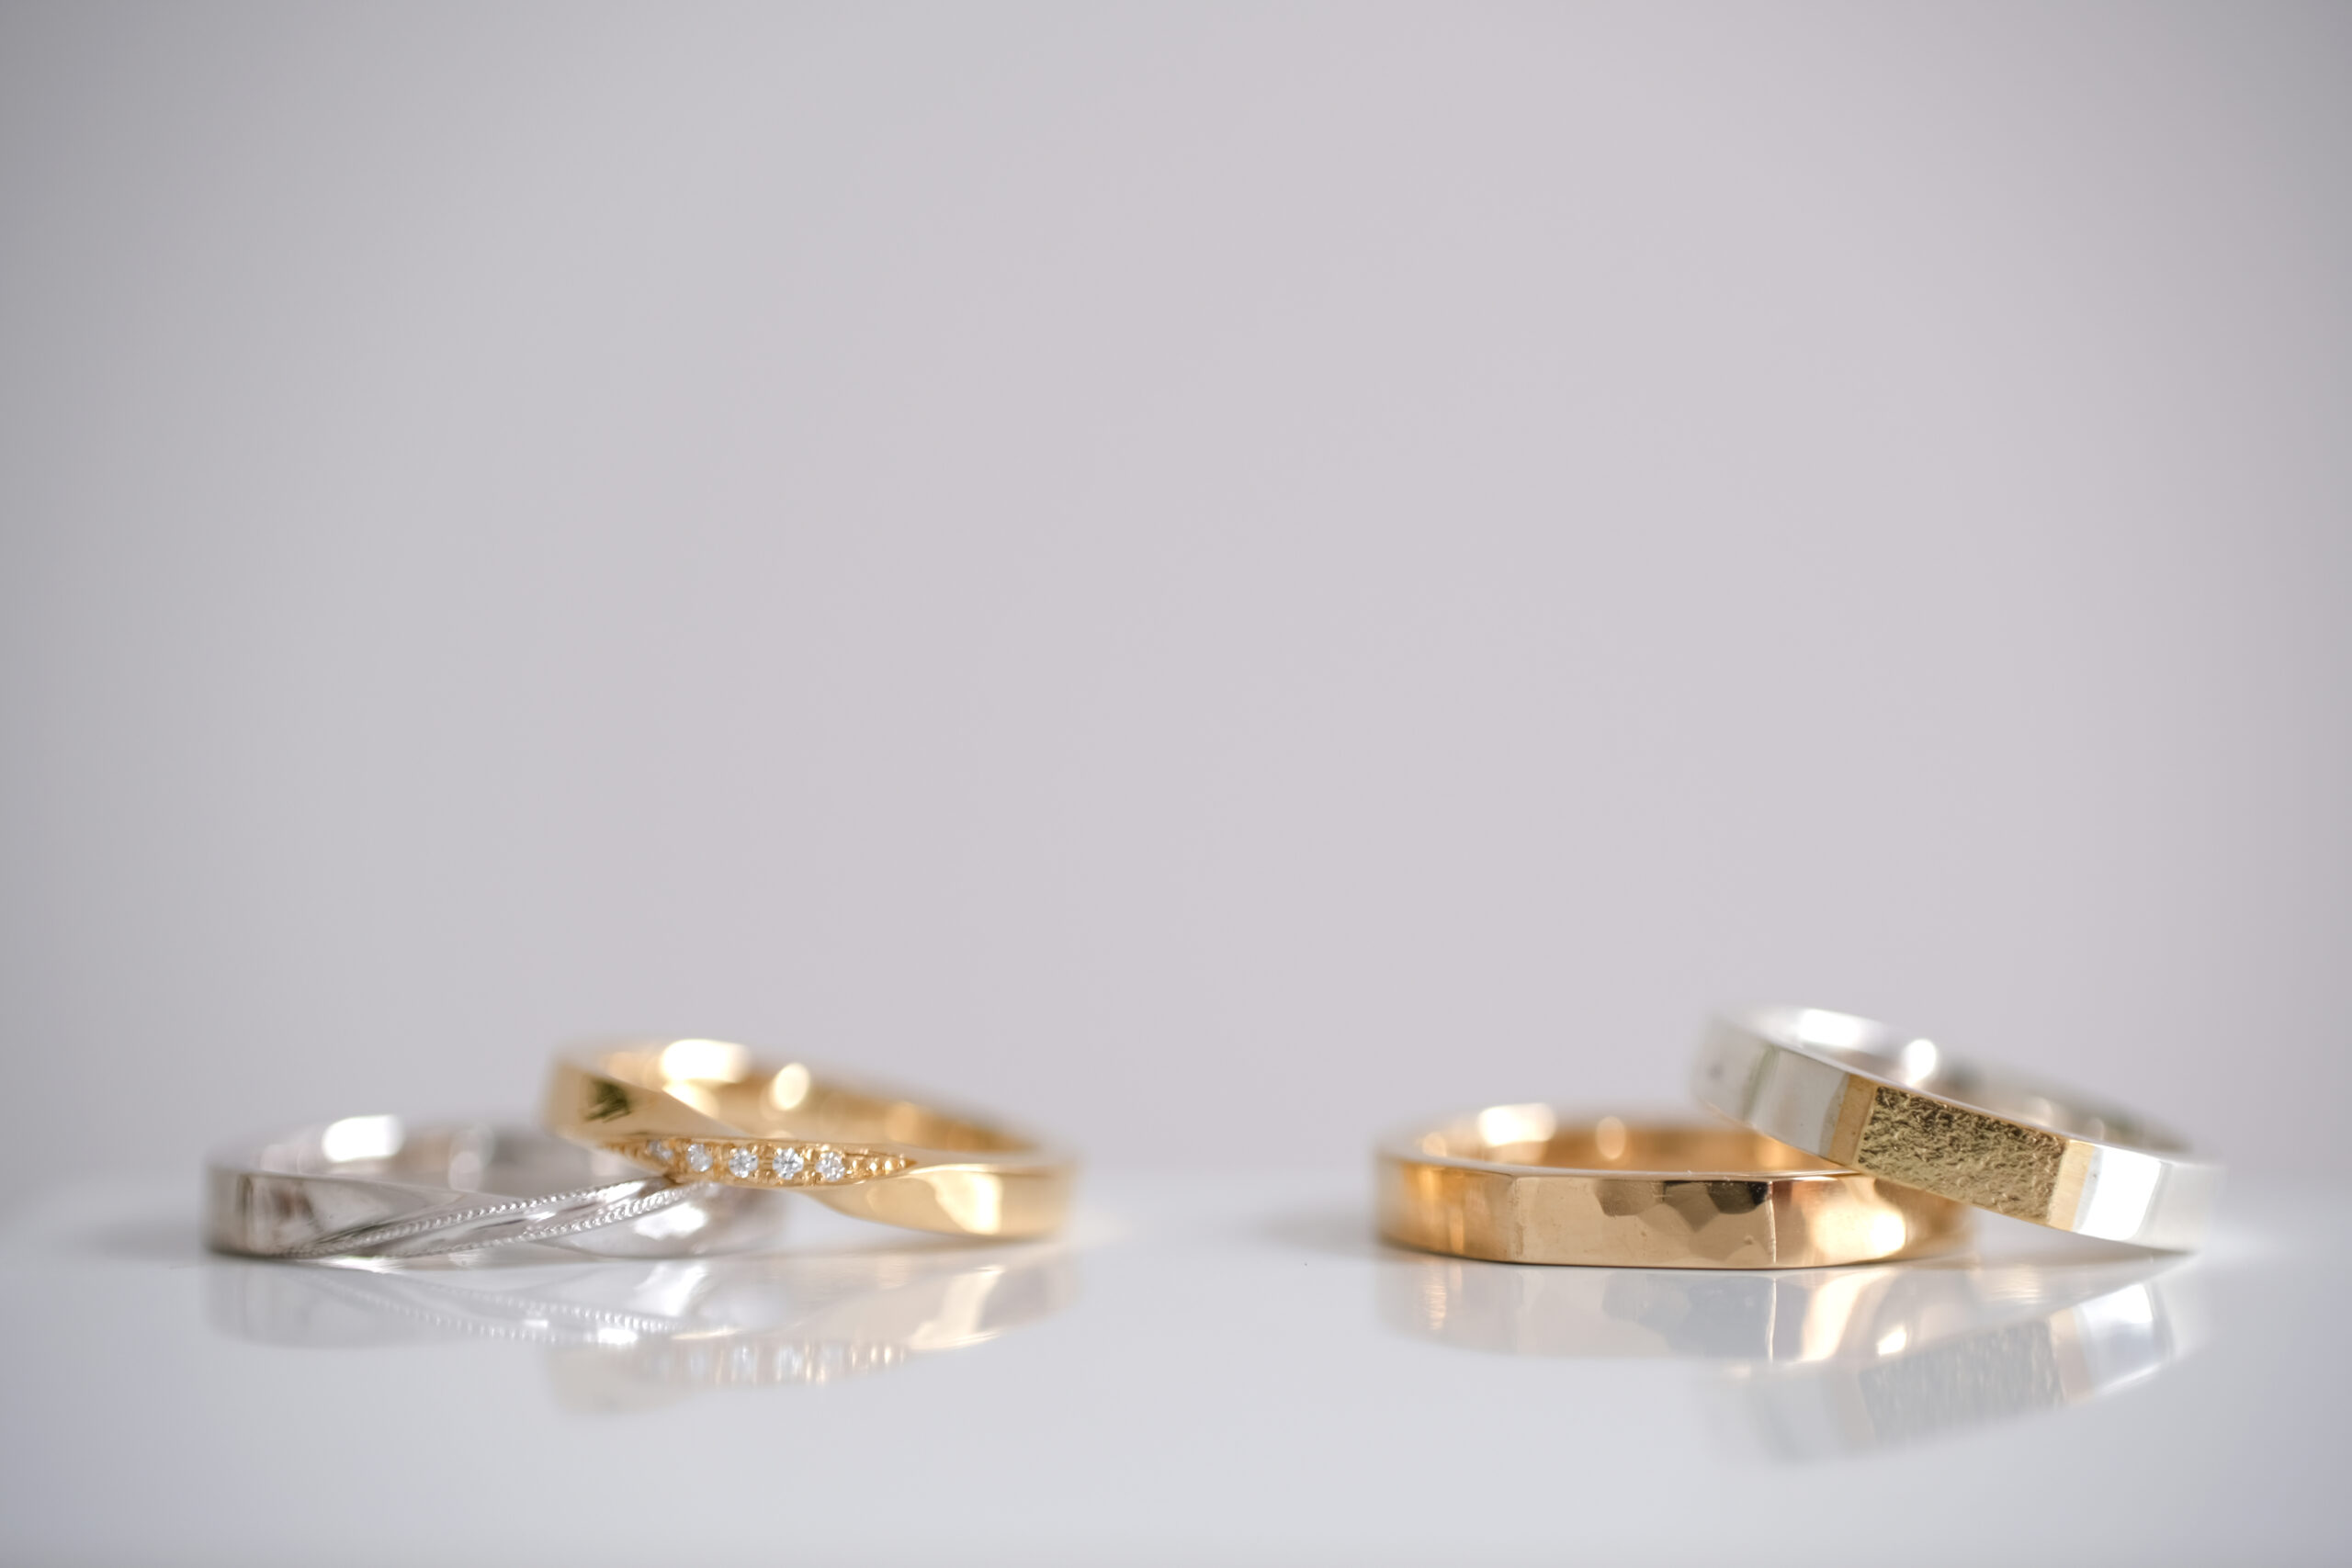 ジェンダーフリーな結婚指輪 全てのカップルへ 結婚指輪手作りとオーダーメイドのmaroi マロイ 千葉